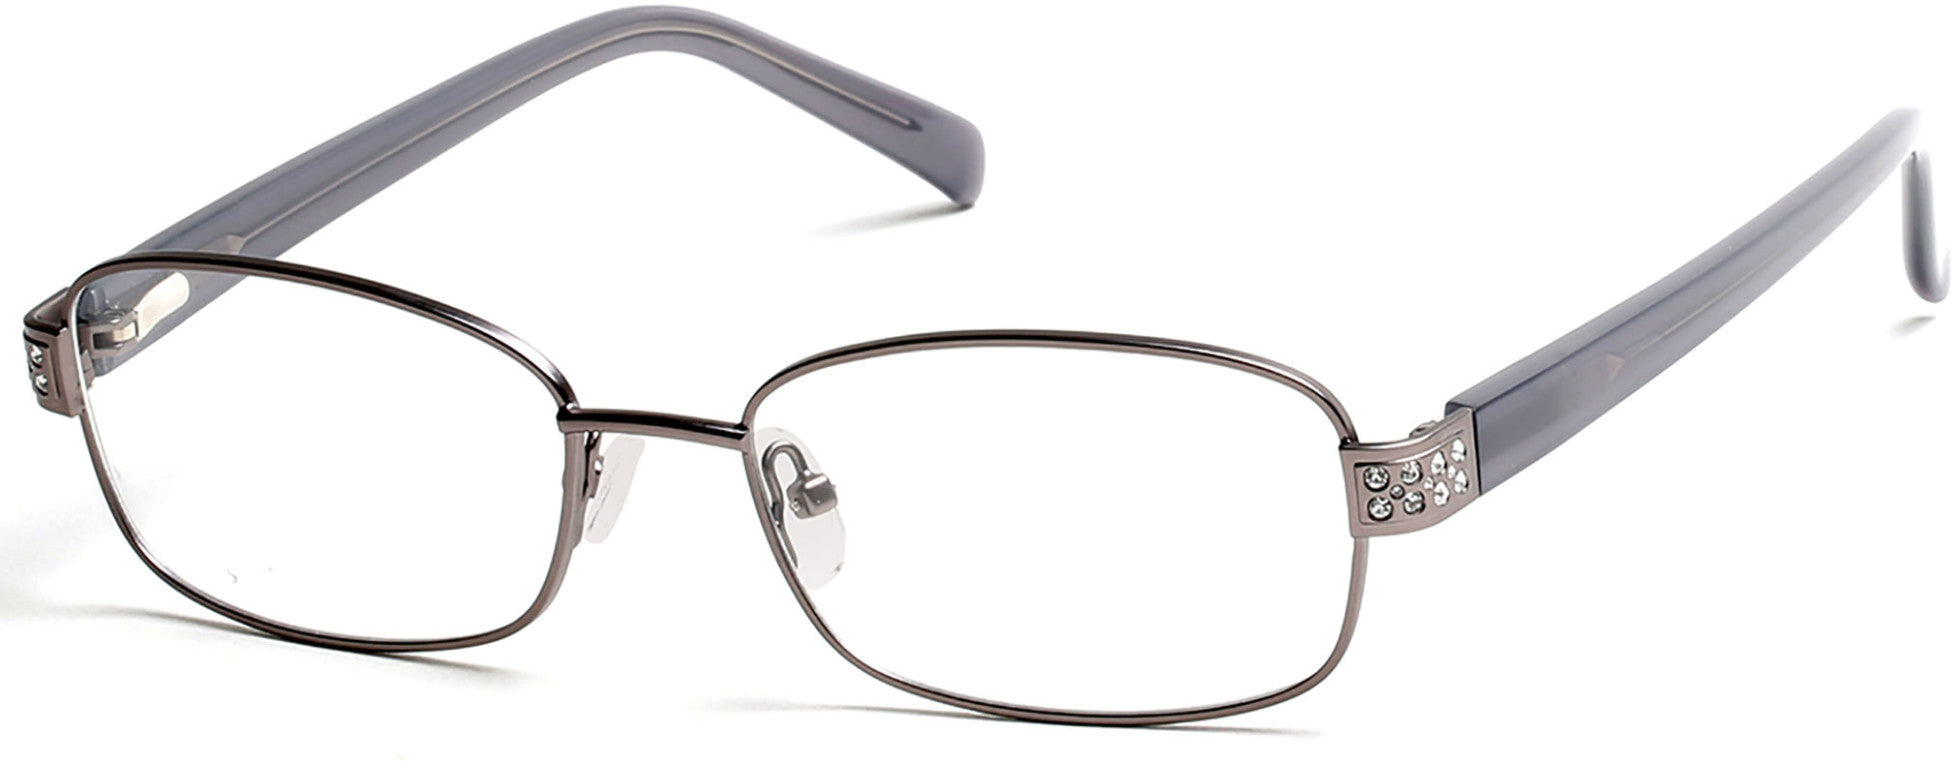 Viva VV0323 Eyeglasses 009-009 - Matte Gunmetal